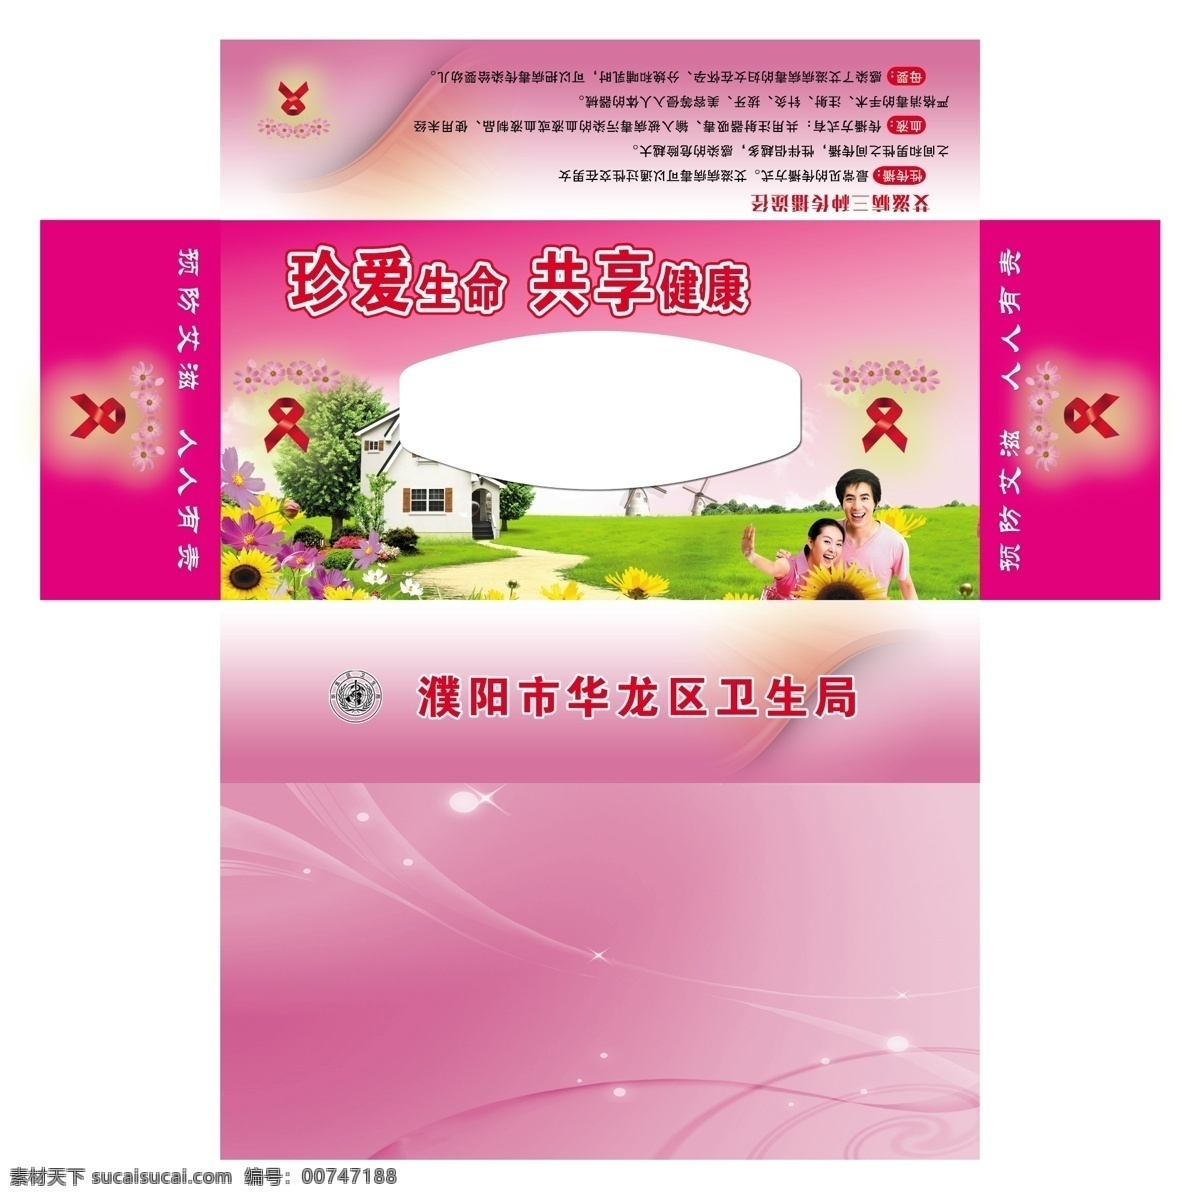 抽纸盒 艾滋病 预防艾滋病 抽纸样品 粉色抽纸盒 包装设计 白色